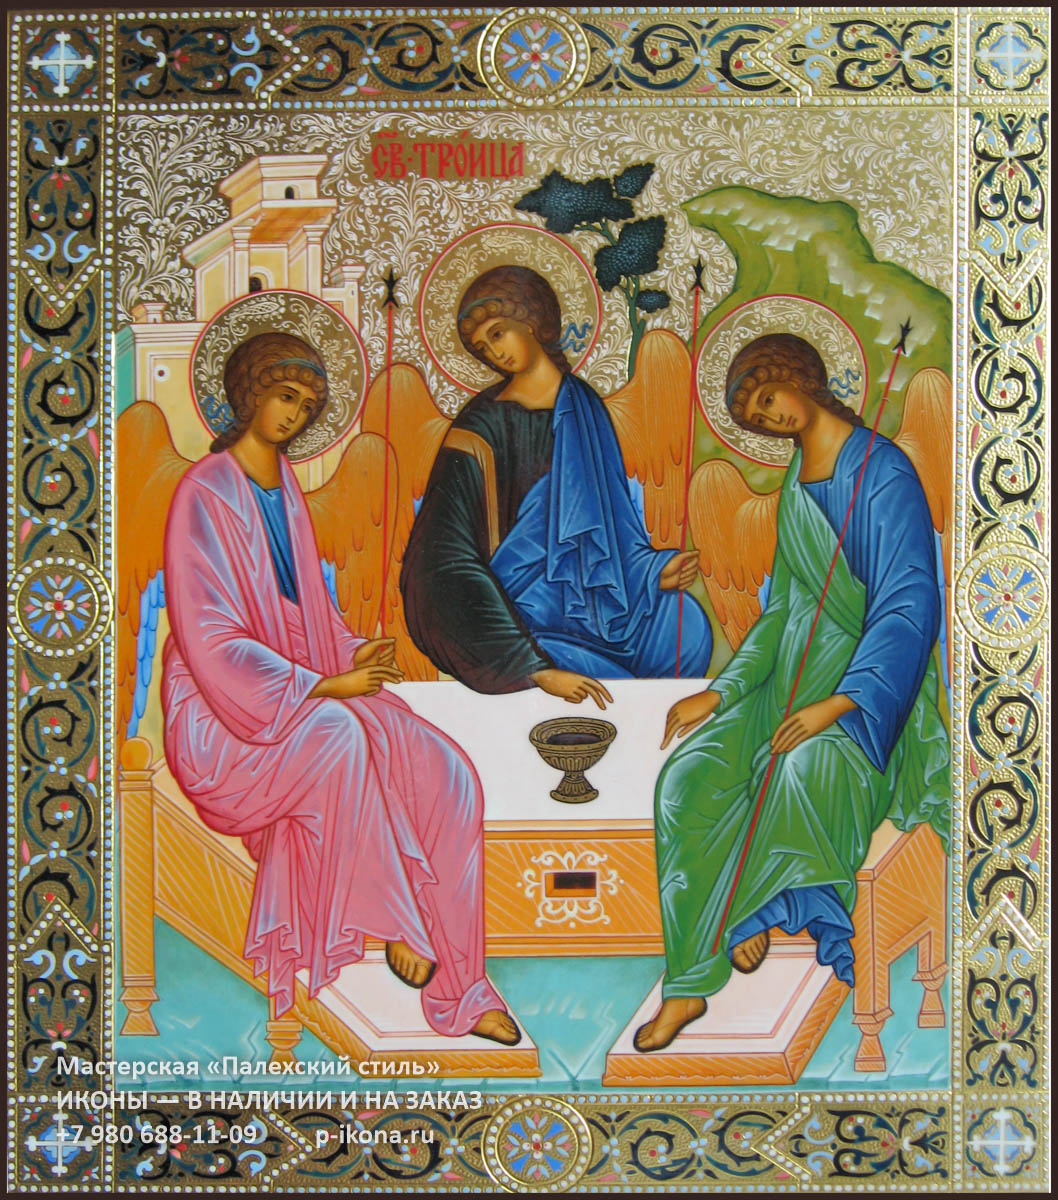 Три святая троица. Икона Святая Троица. Икона св. Троица. Икона Живоначальной Троицы. Святая Троица Пятидесятница иконопись.